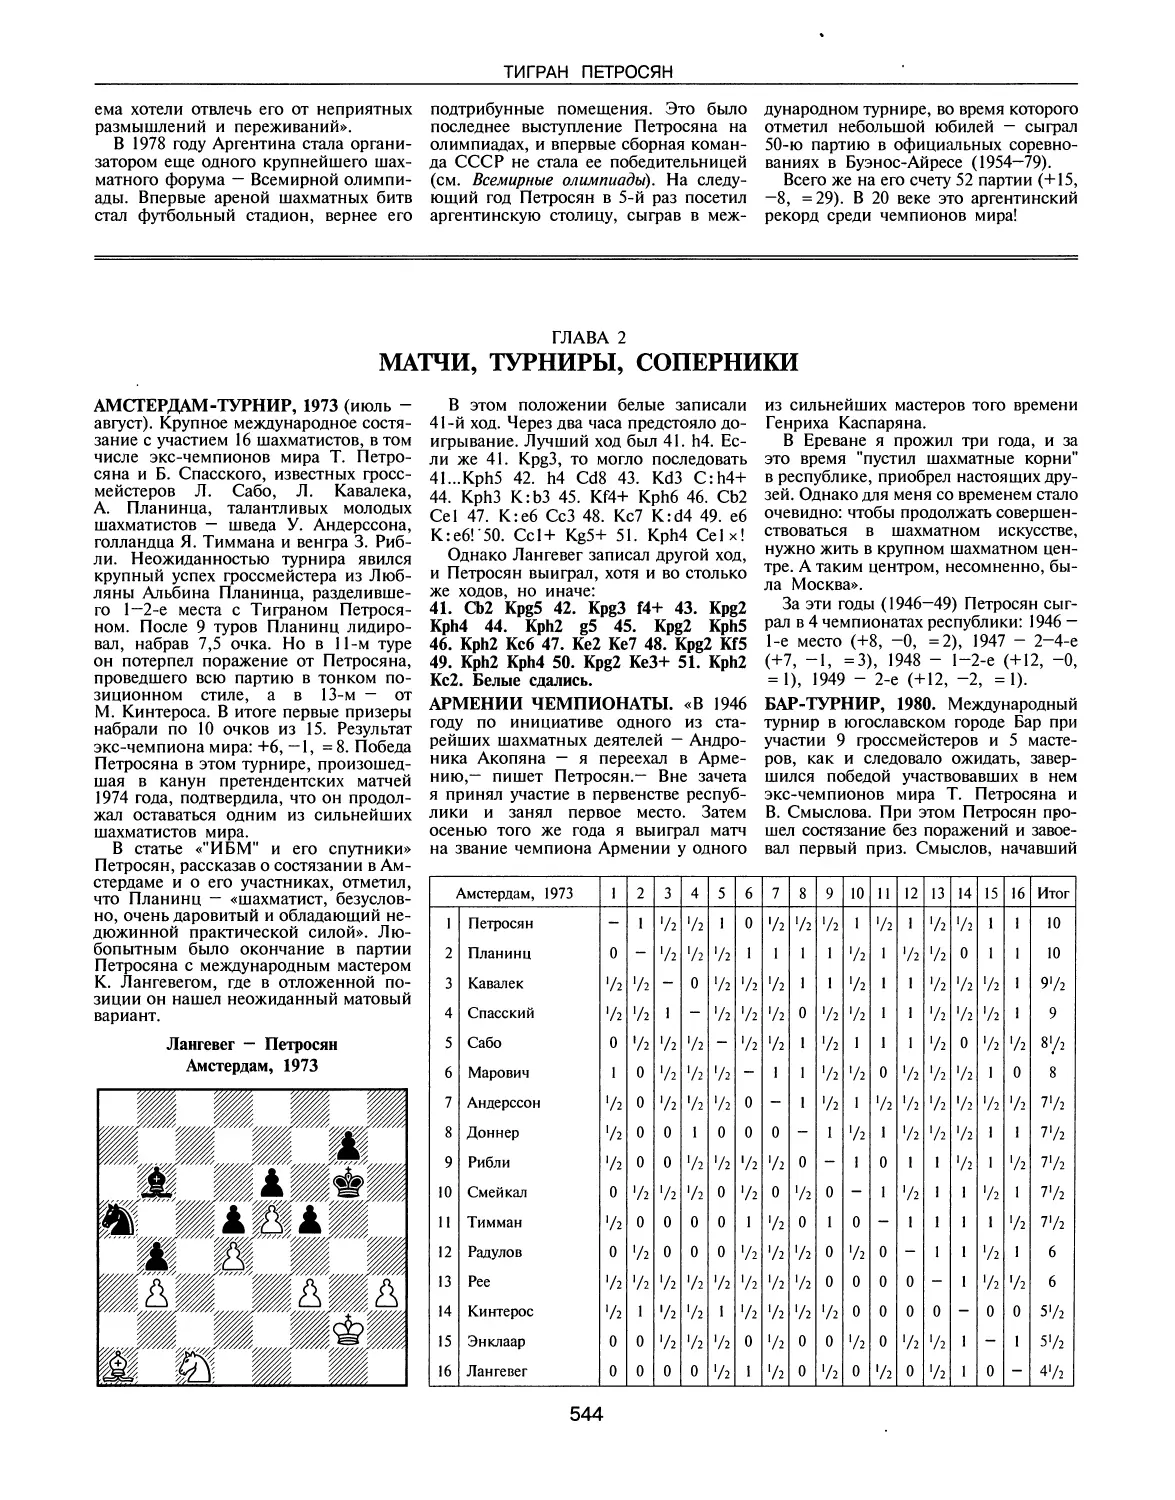 ГЛАВА 2. Матчи, турниры, соперники
Армении чемпионаты
Бар-турнир, 1980